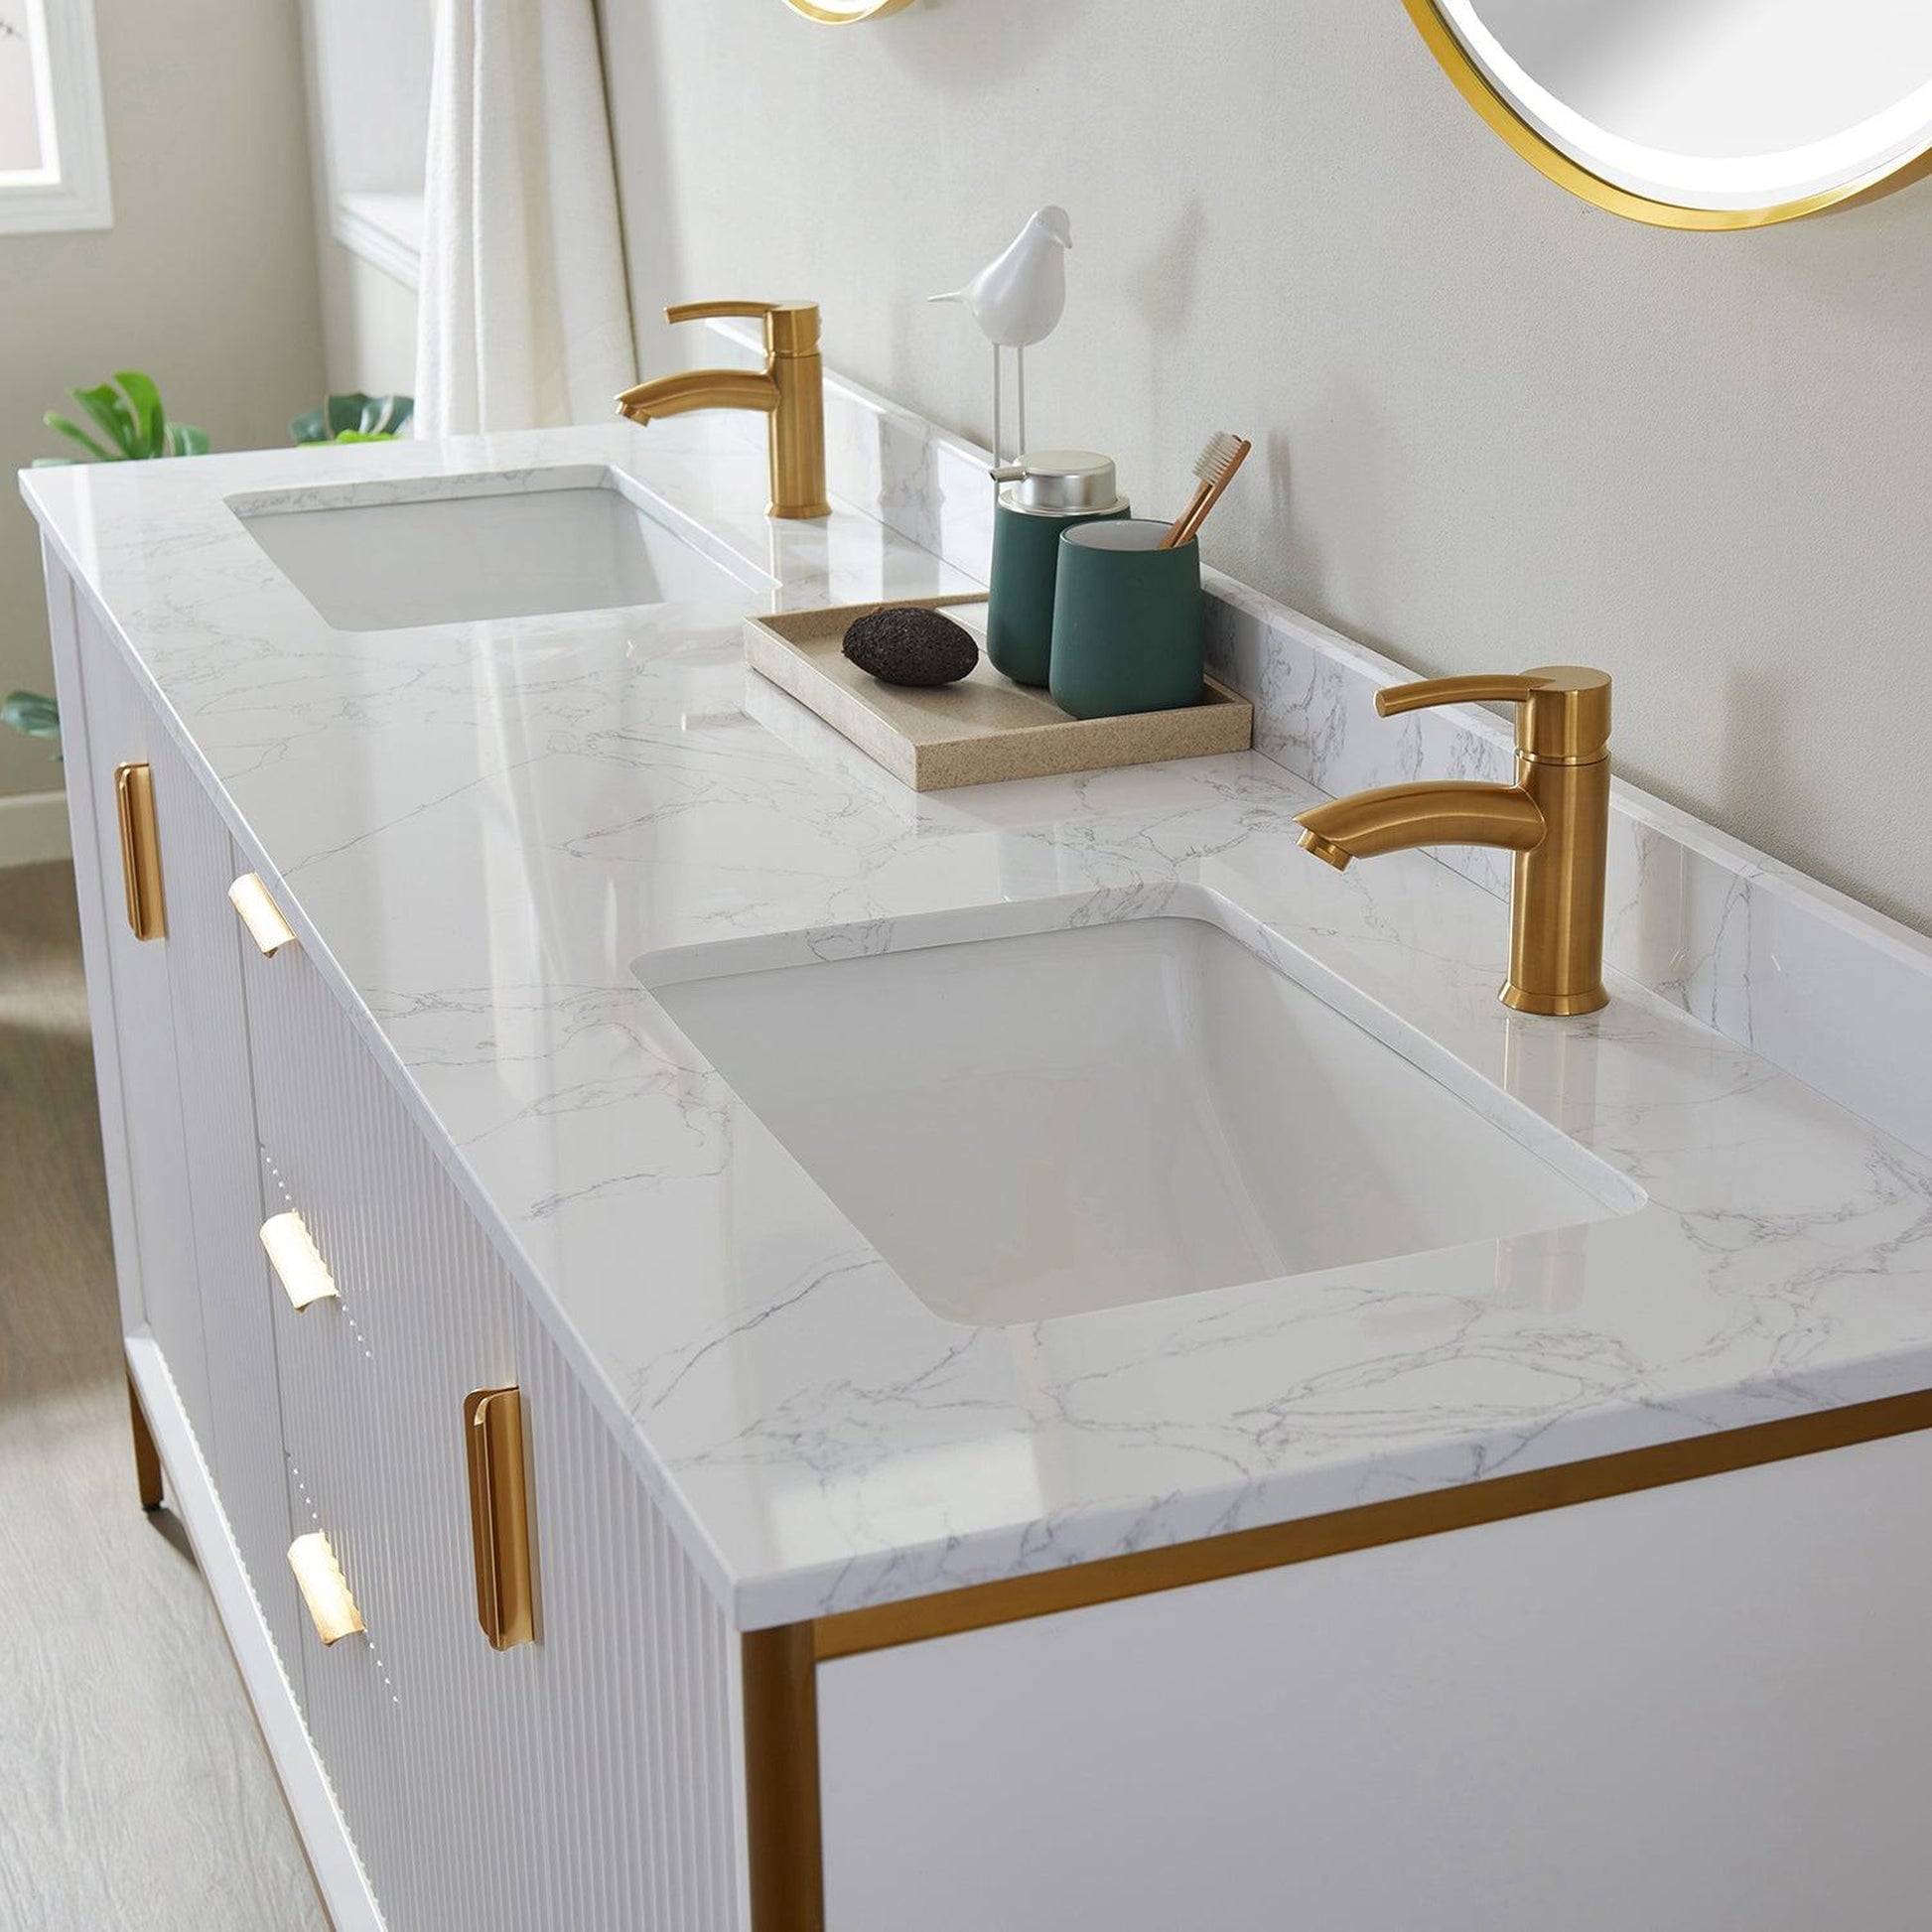 Vinnova Granada 72" Double Vanity In White With White Composite Grain Stone Countertop And Mirror